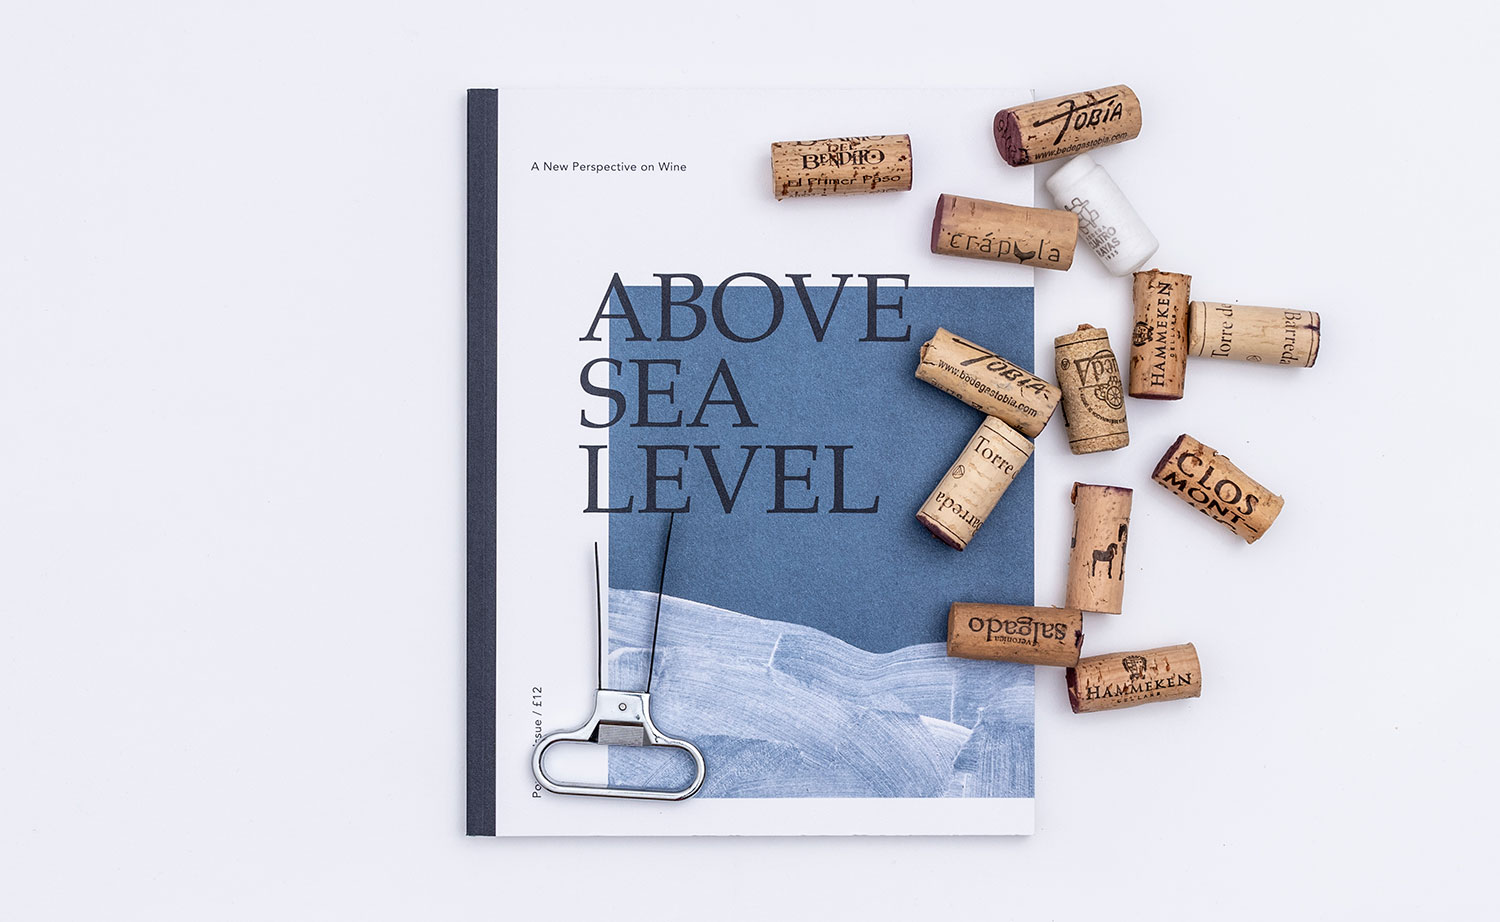 Revista Above the sea level